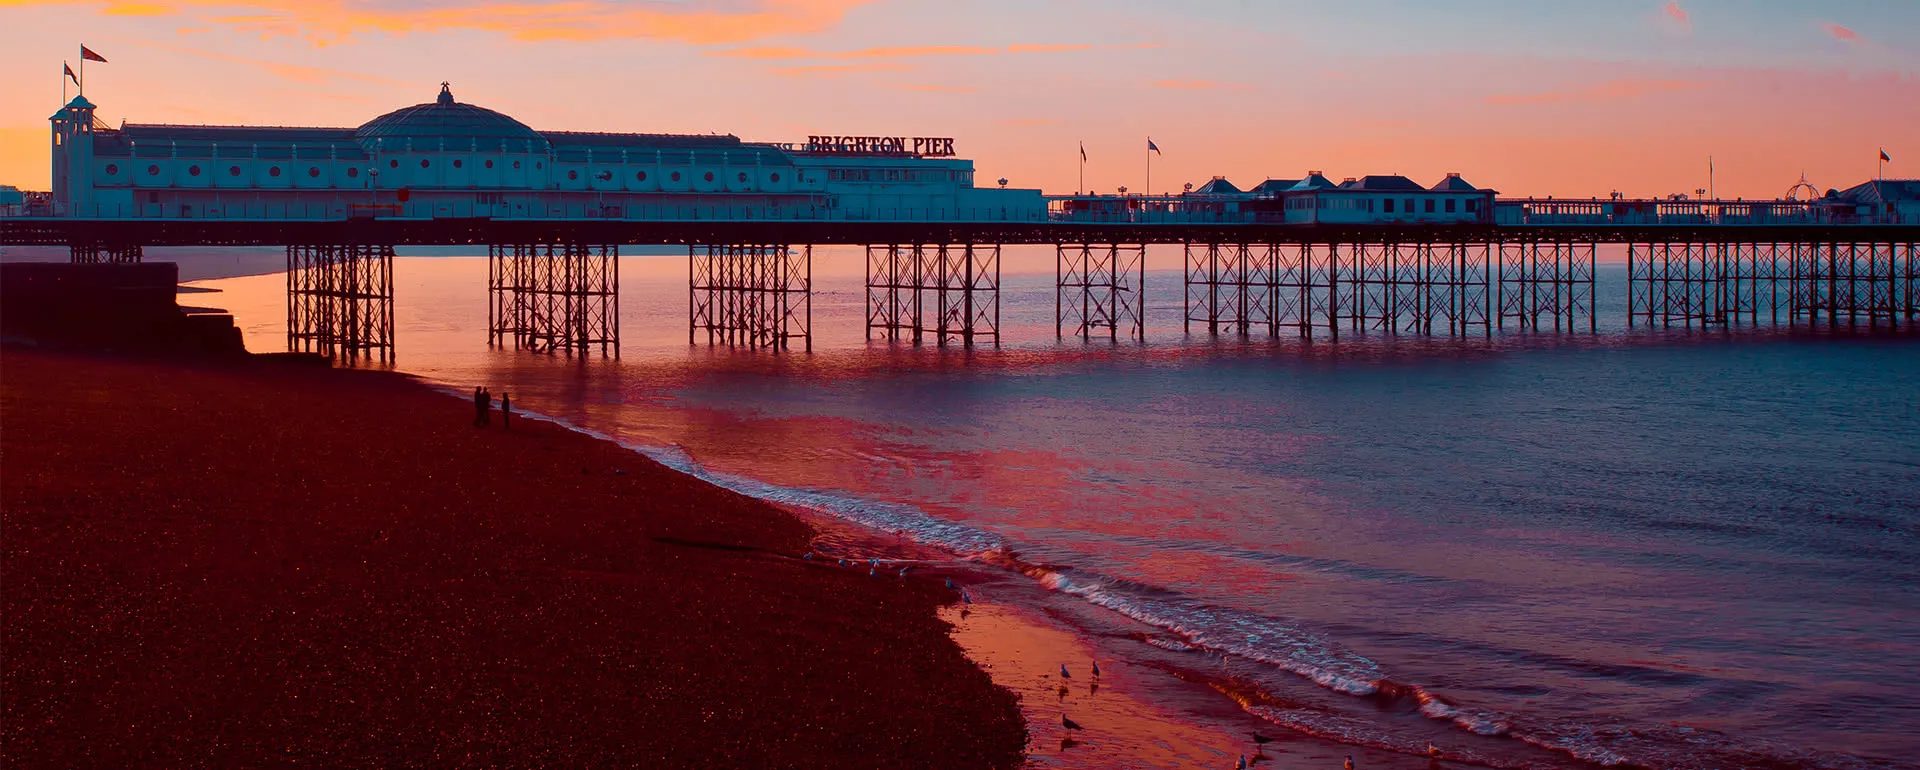 Brighton - the destination for company trips